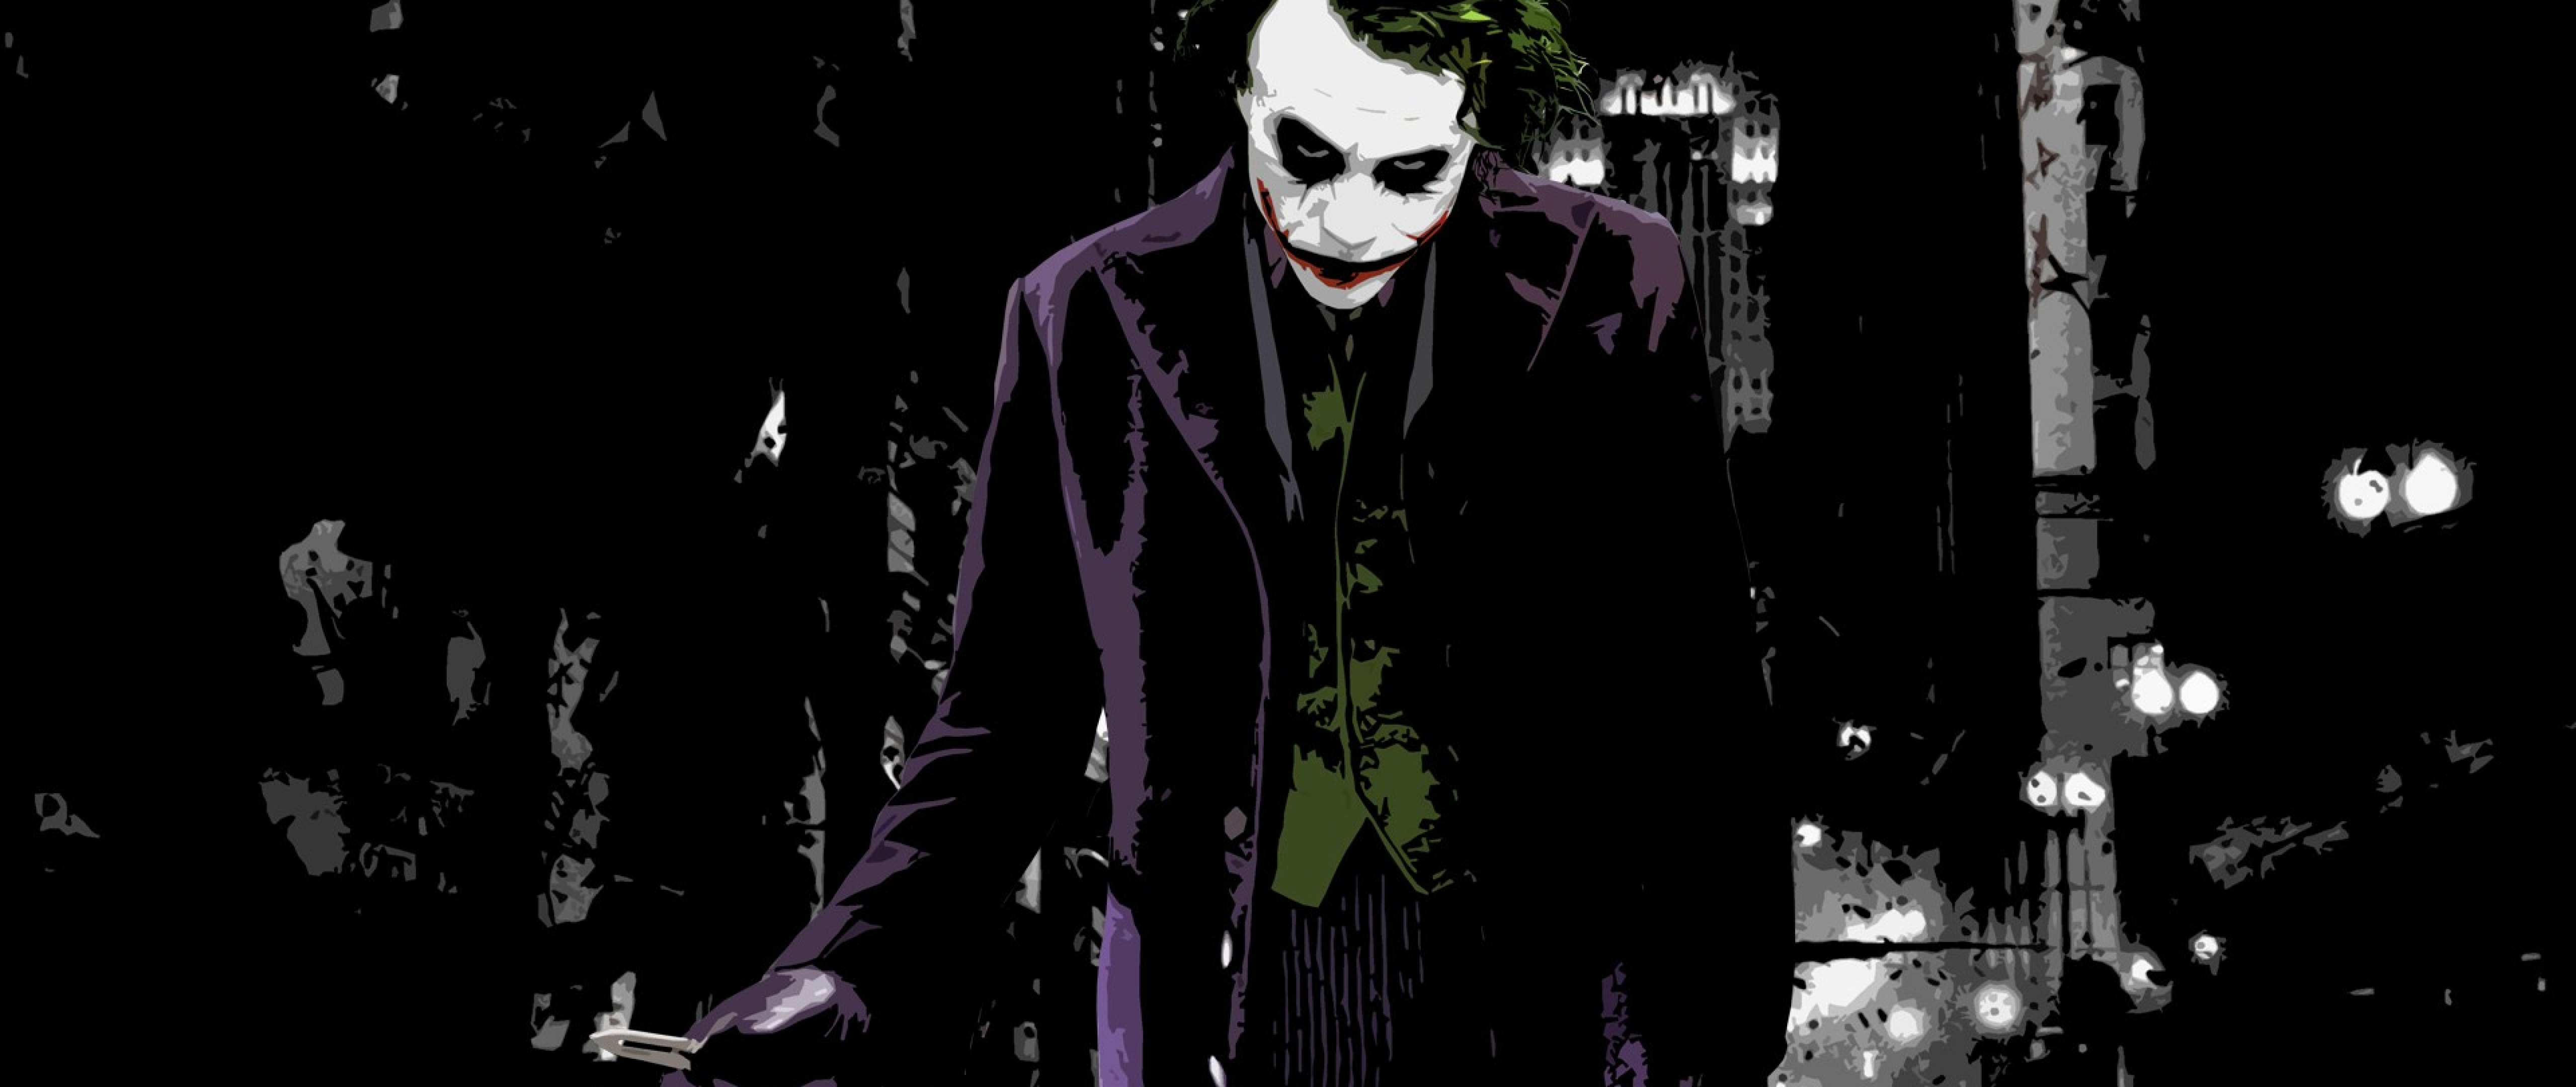 Full Joker Cartoon Hd Wallpaper for Desktop and Mobiles 4K ...